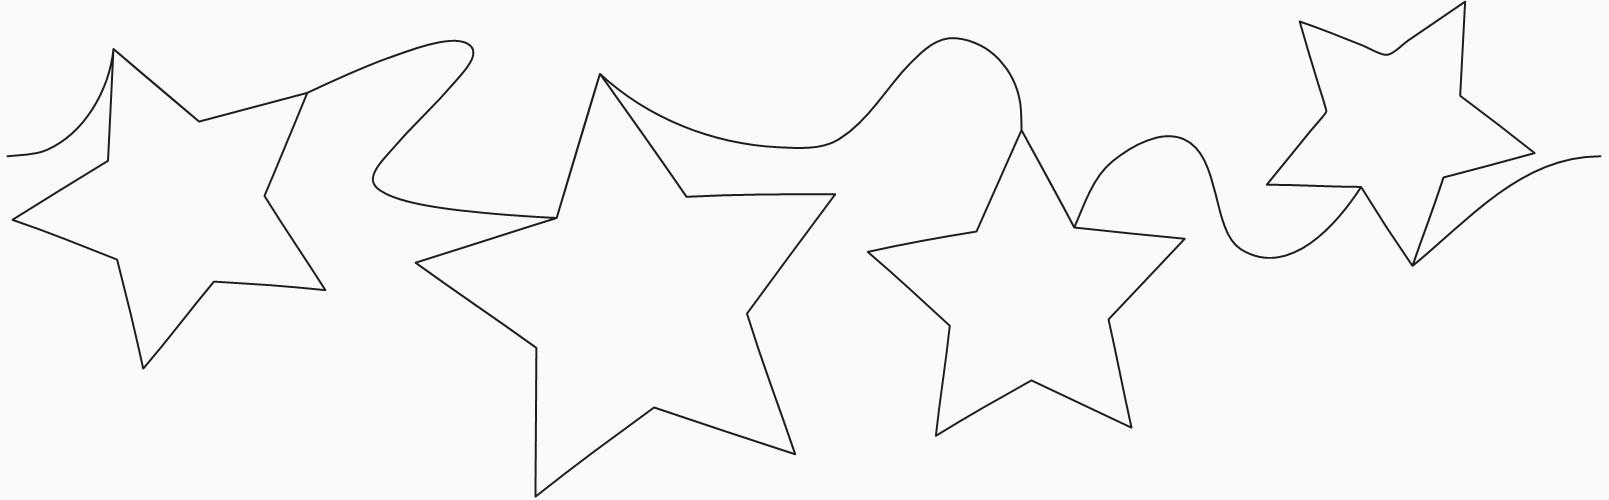 Tossed Stars Edge-to-Edge Design - Basic Stars | Quiltable | Jen Eskridge